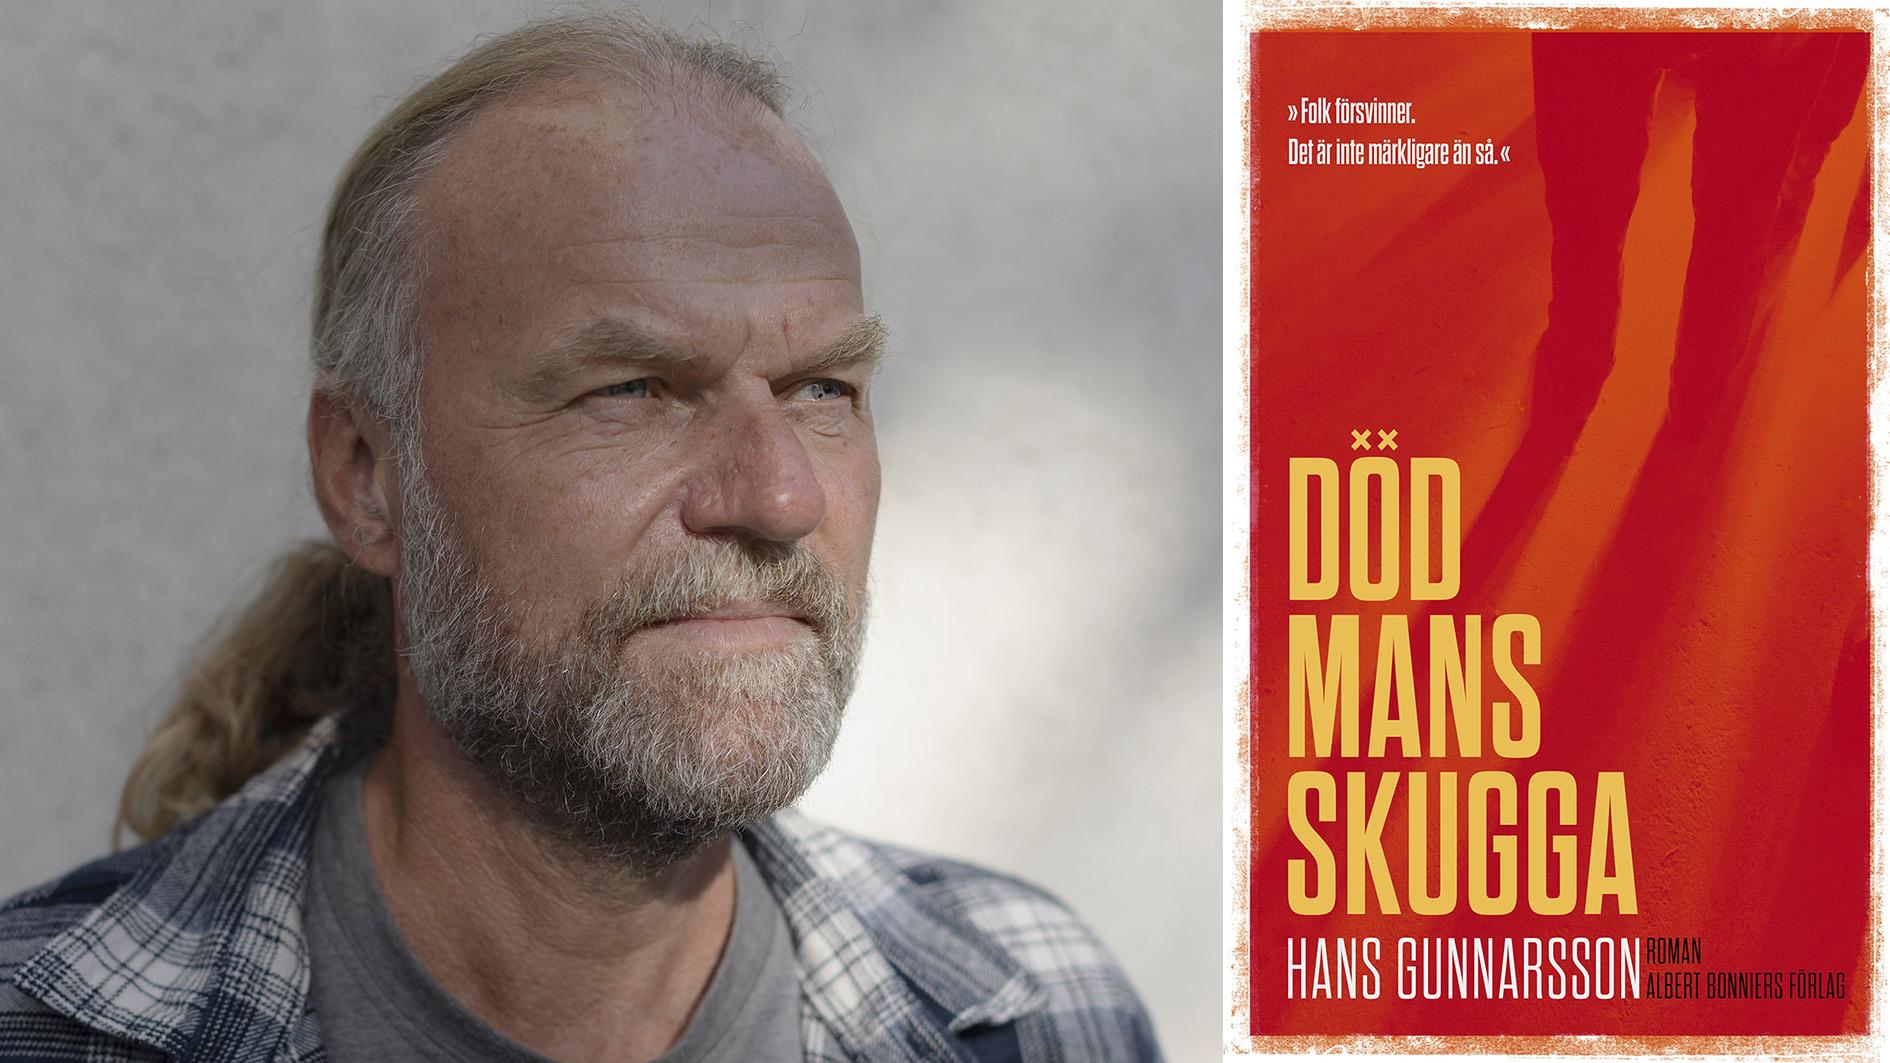 Hans Gunnarsson (född 1966) debuterade 1996 med novellsamlingen ”Bakom glas”, och utkom med sin första roman ”En jävla vinter” 2003. Med den nya romanen ”Död mans skugga” fullbordas den romantrilogi som inleddes med ”All inclusive” 2015 och följdes upp med ”Nattsida” 2019.